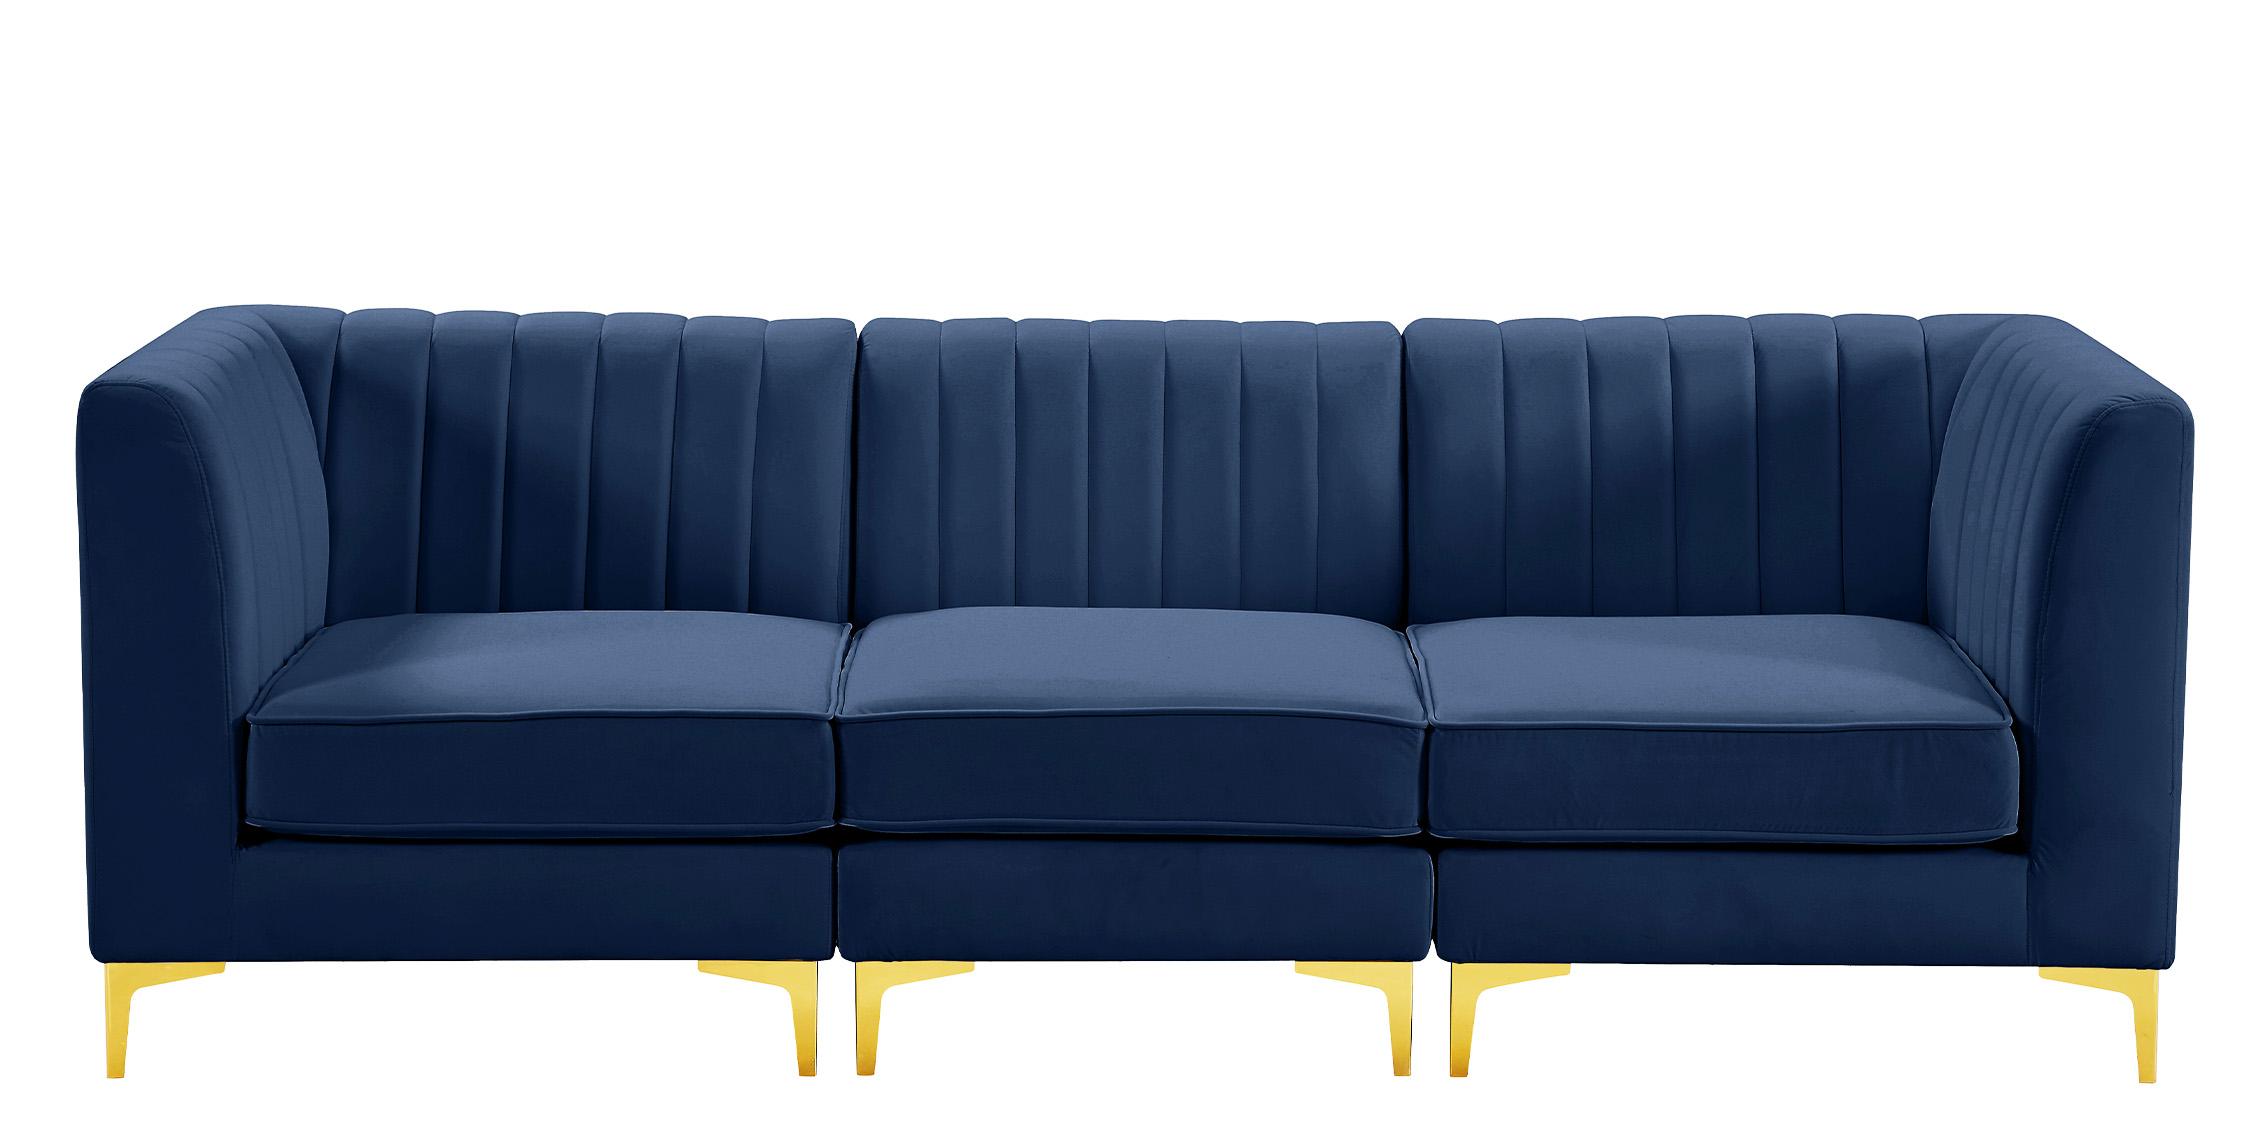 

    
Meridian Furniture ALINA 604Navy-S93 Modular Sectional Sofa Navy 604Navy-S93
